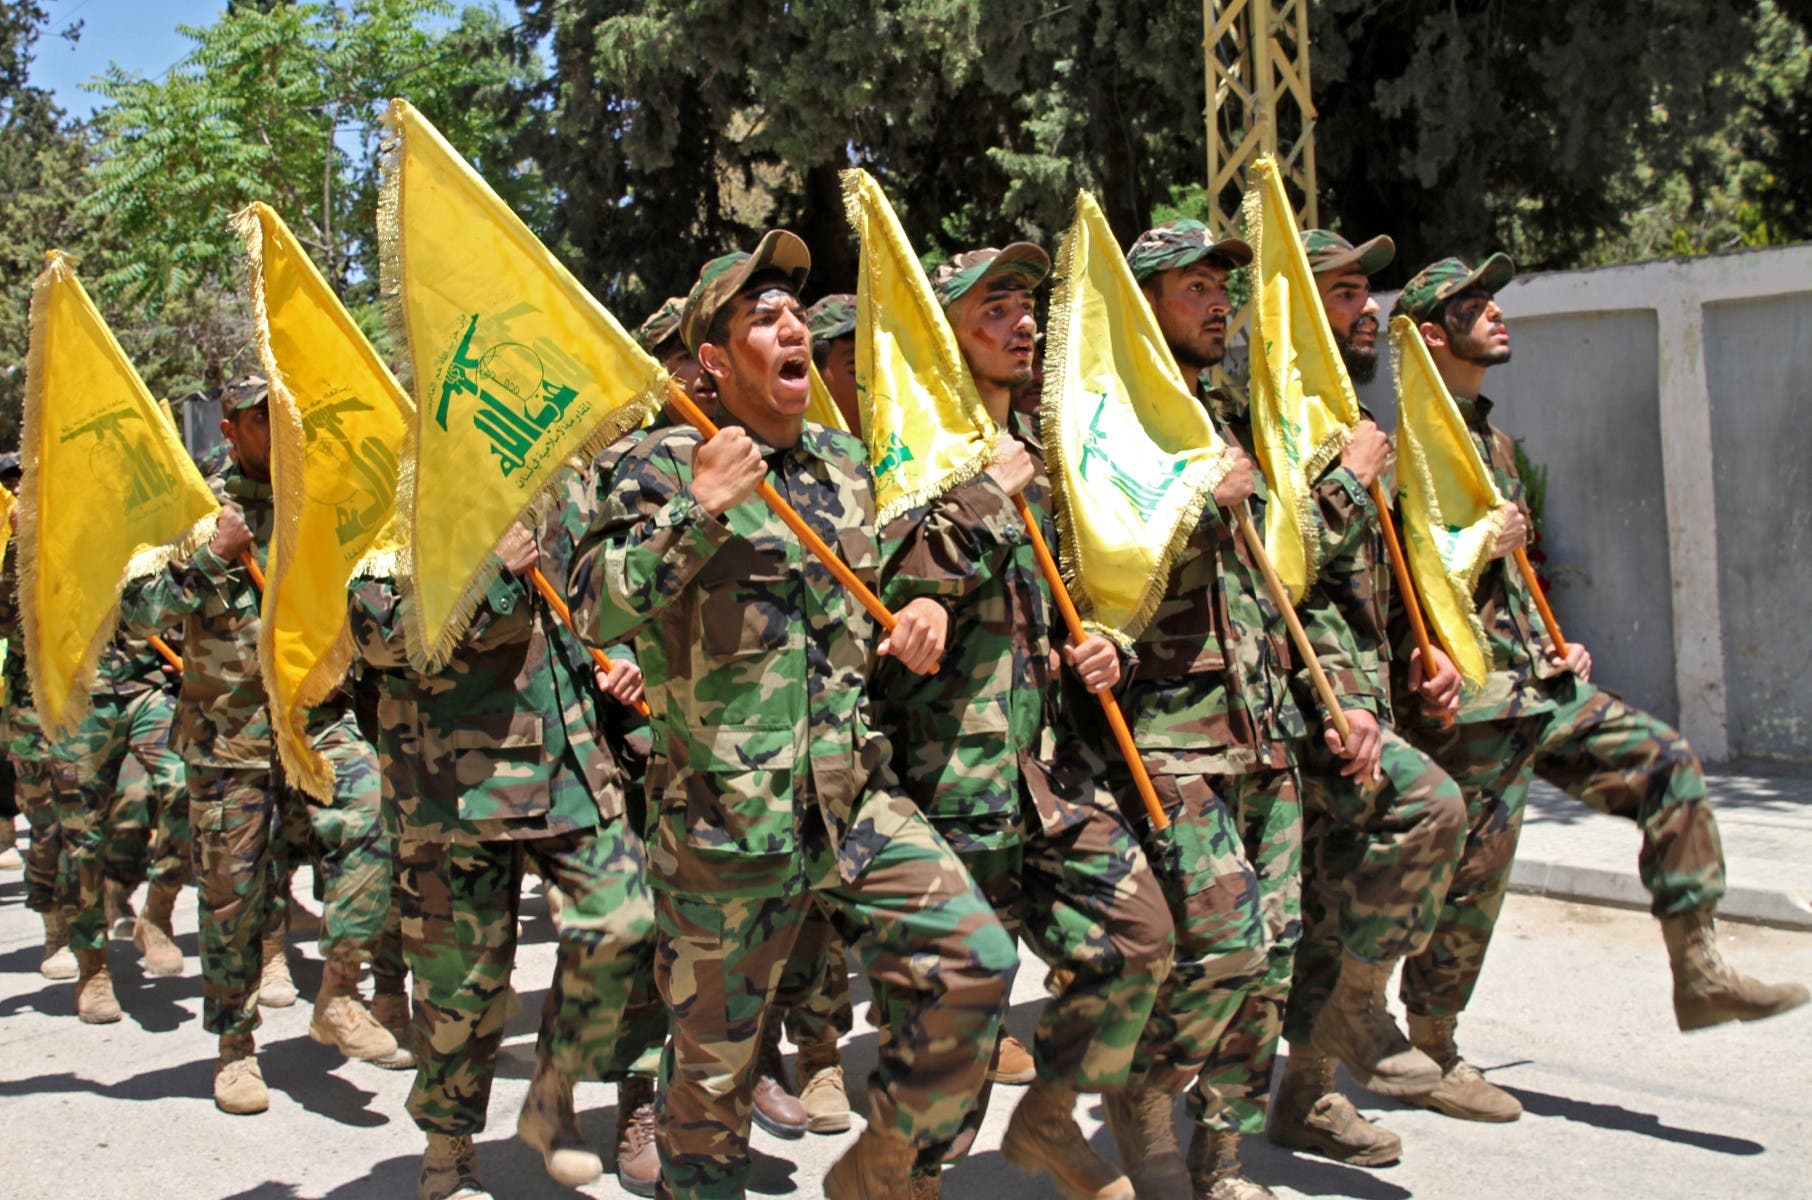 عناصر من حزب الله في لبنان (فرانس برس)